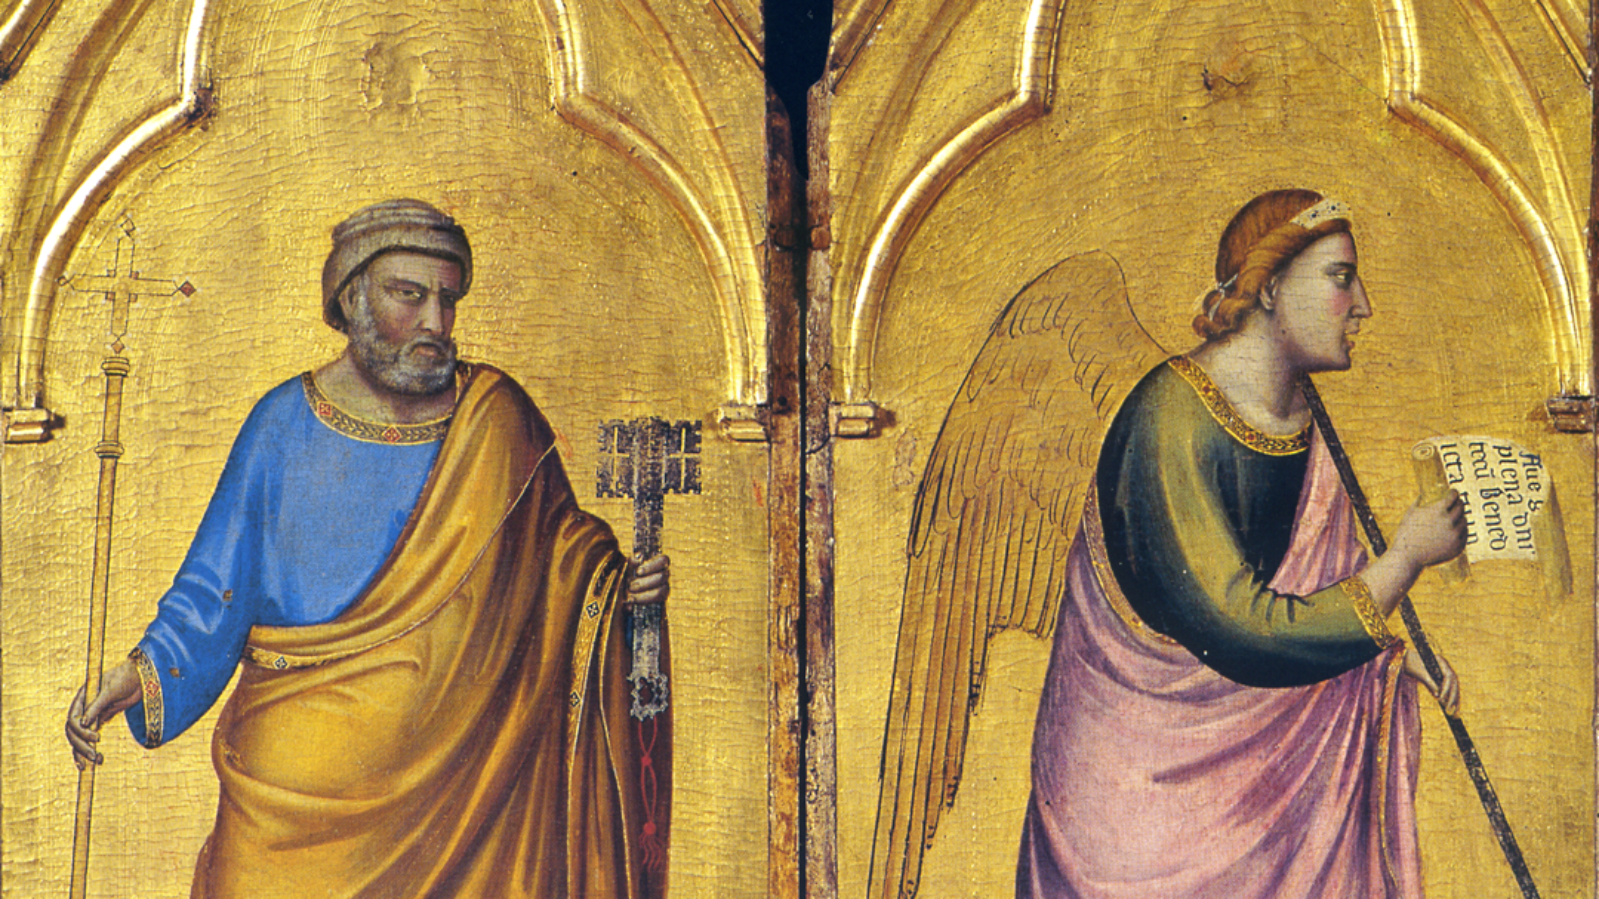 Polittico, Giotto, ©Pinacoteca Nazionale di Bologna